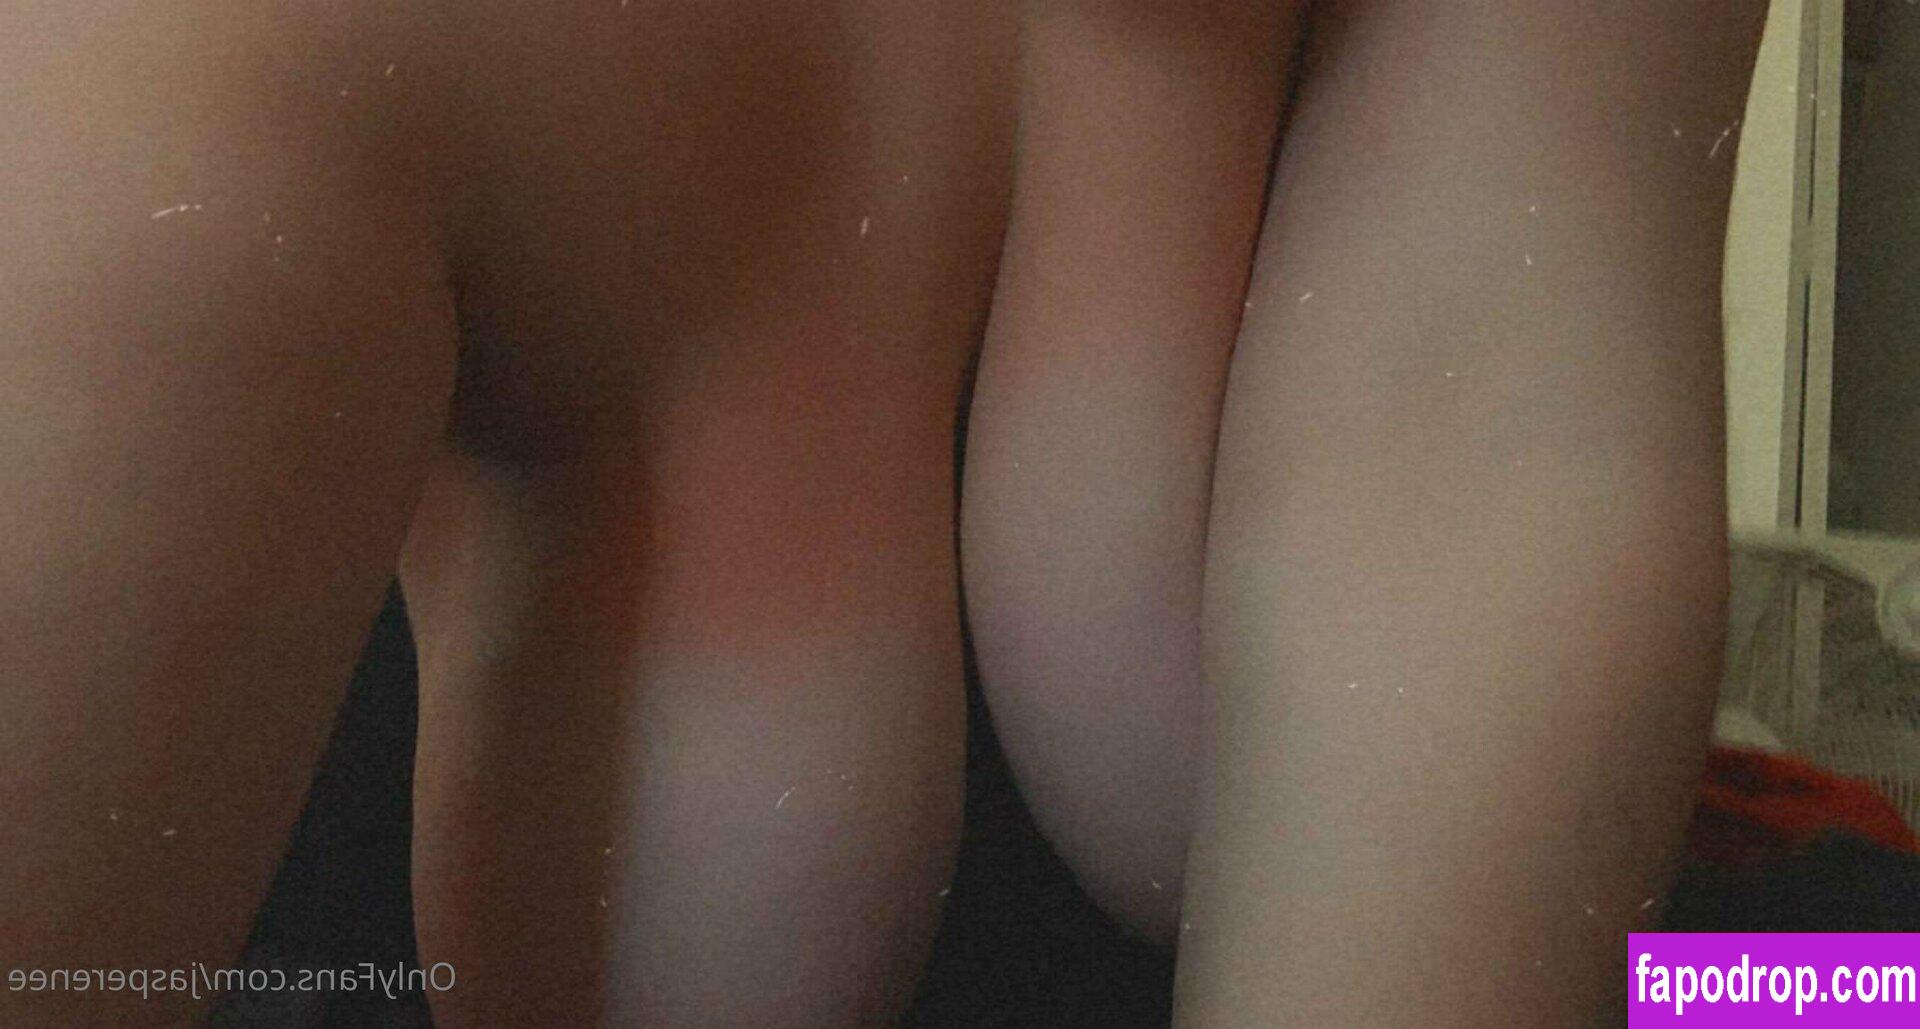 ja_renee / jarenee69 leak of nude photo #0029 from OnlyFans or Patreon